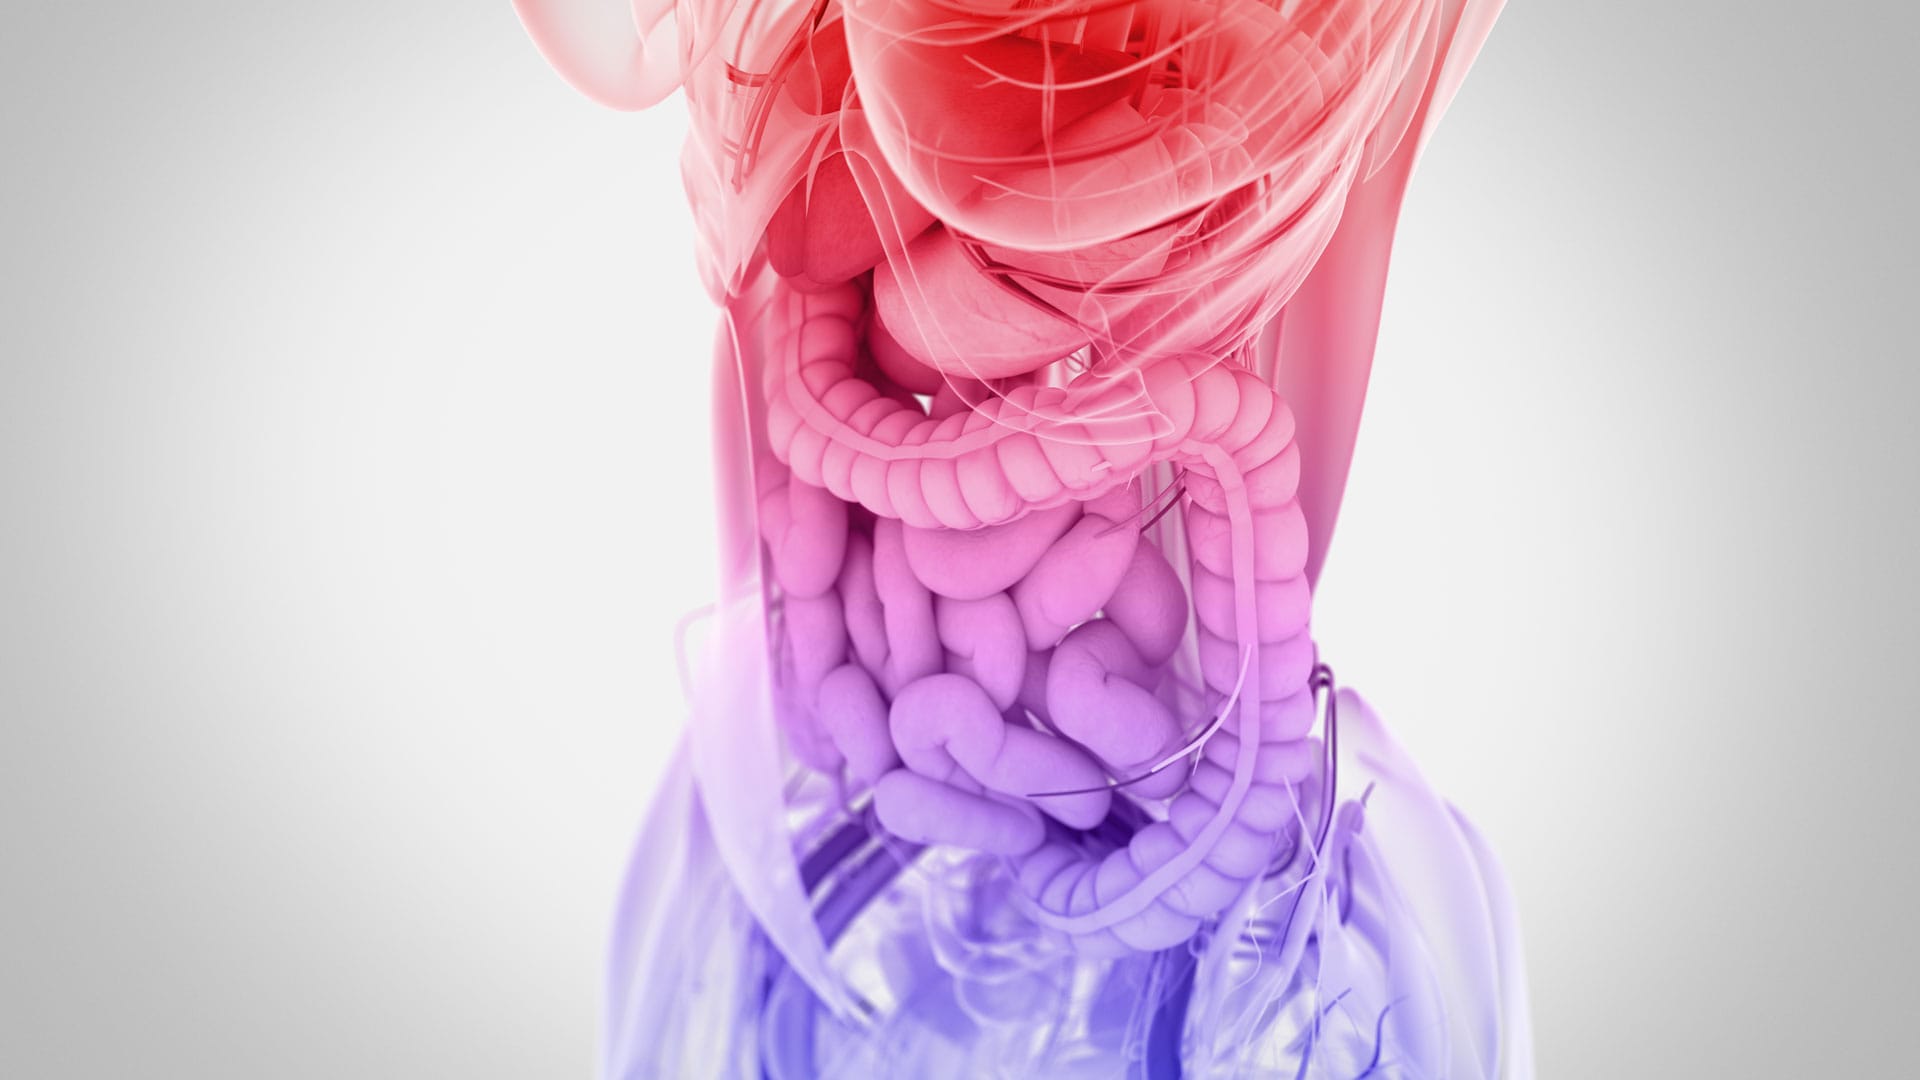 3D illustration of gut, female body